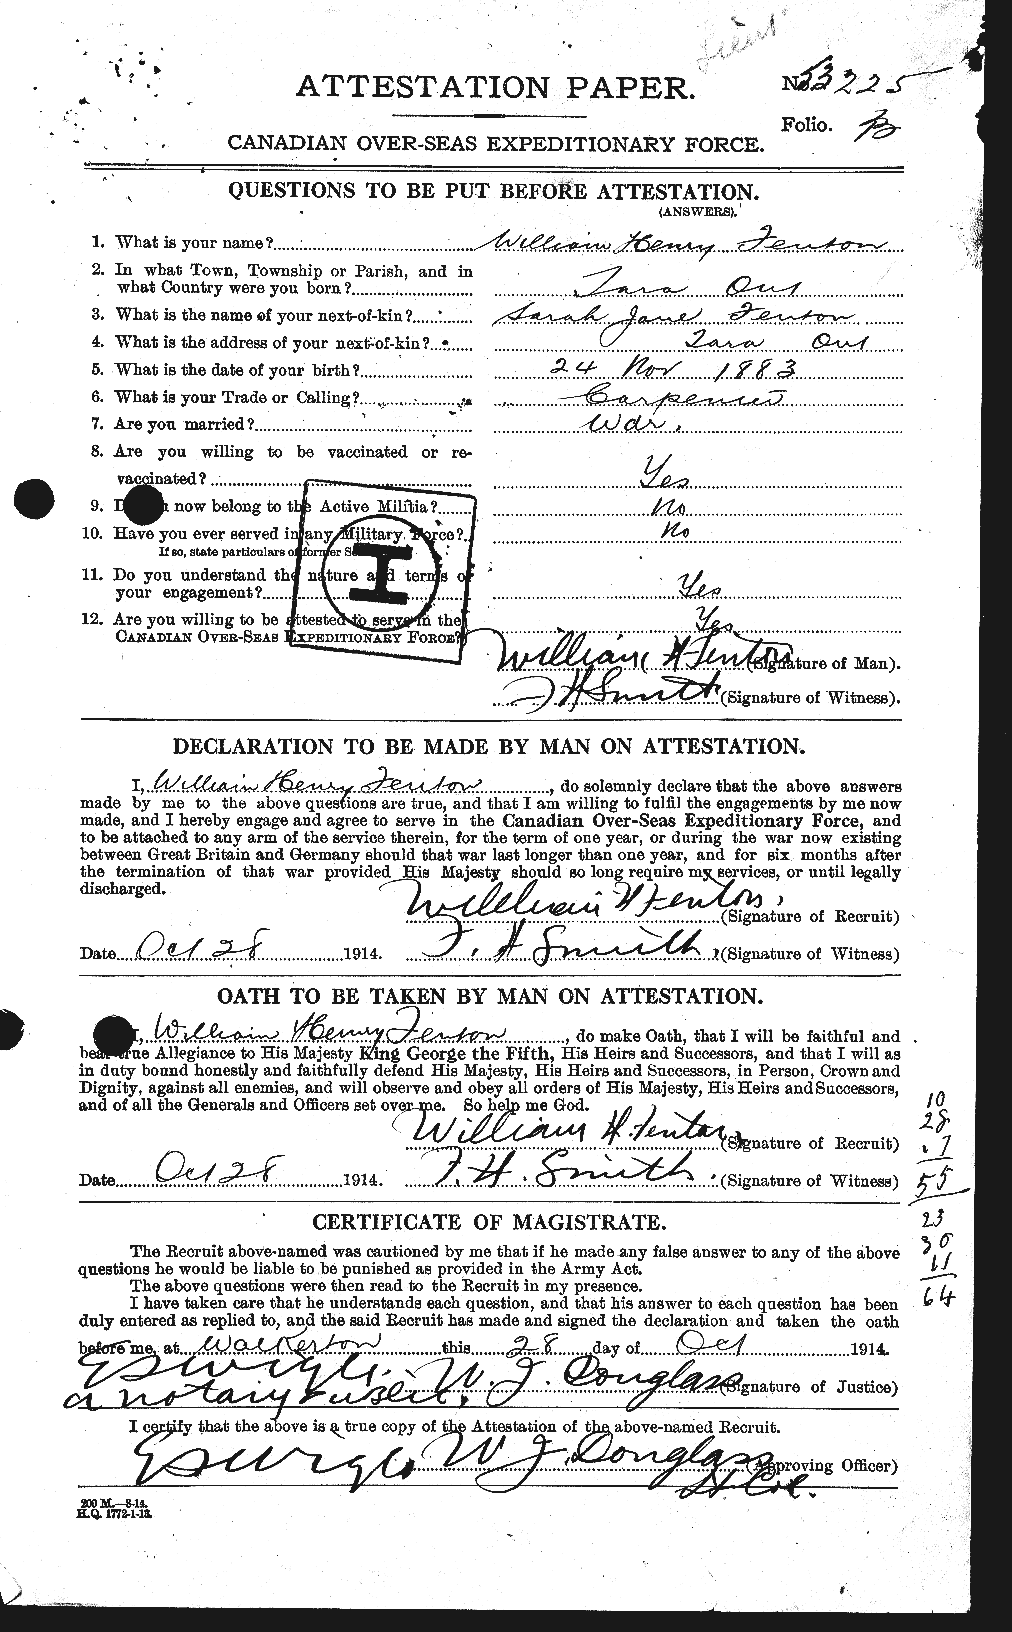 Dossiers du Personnel de la Première Guerre mondiale - CEC 318571a